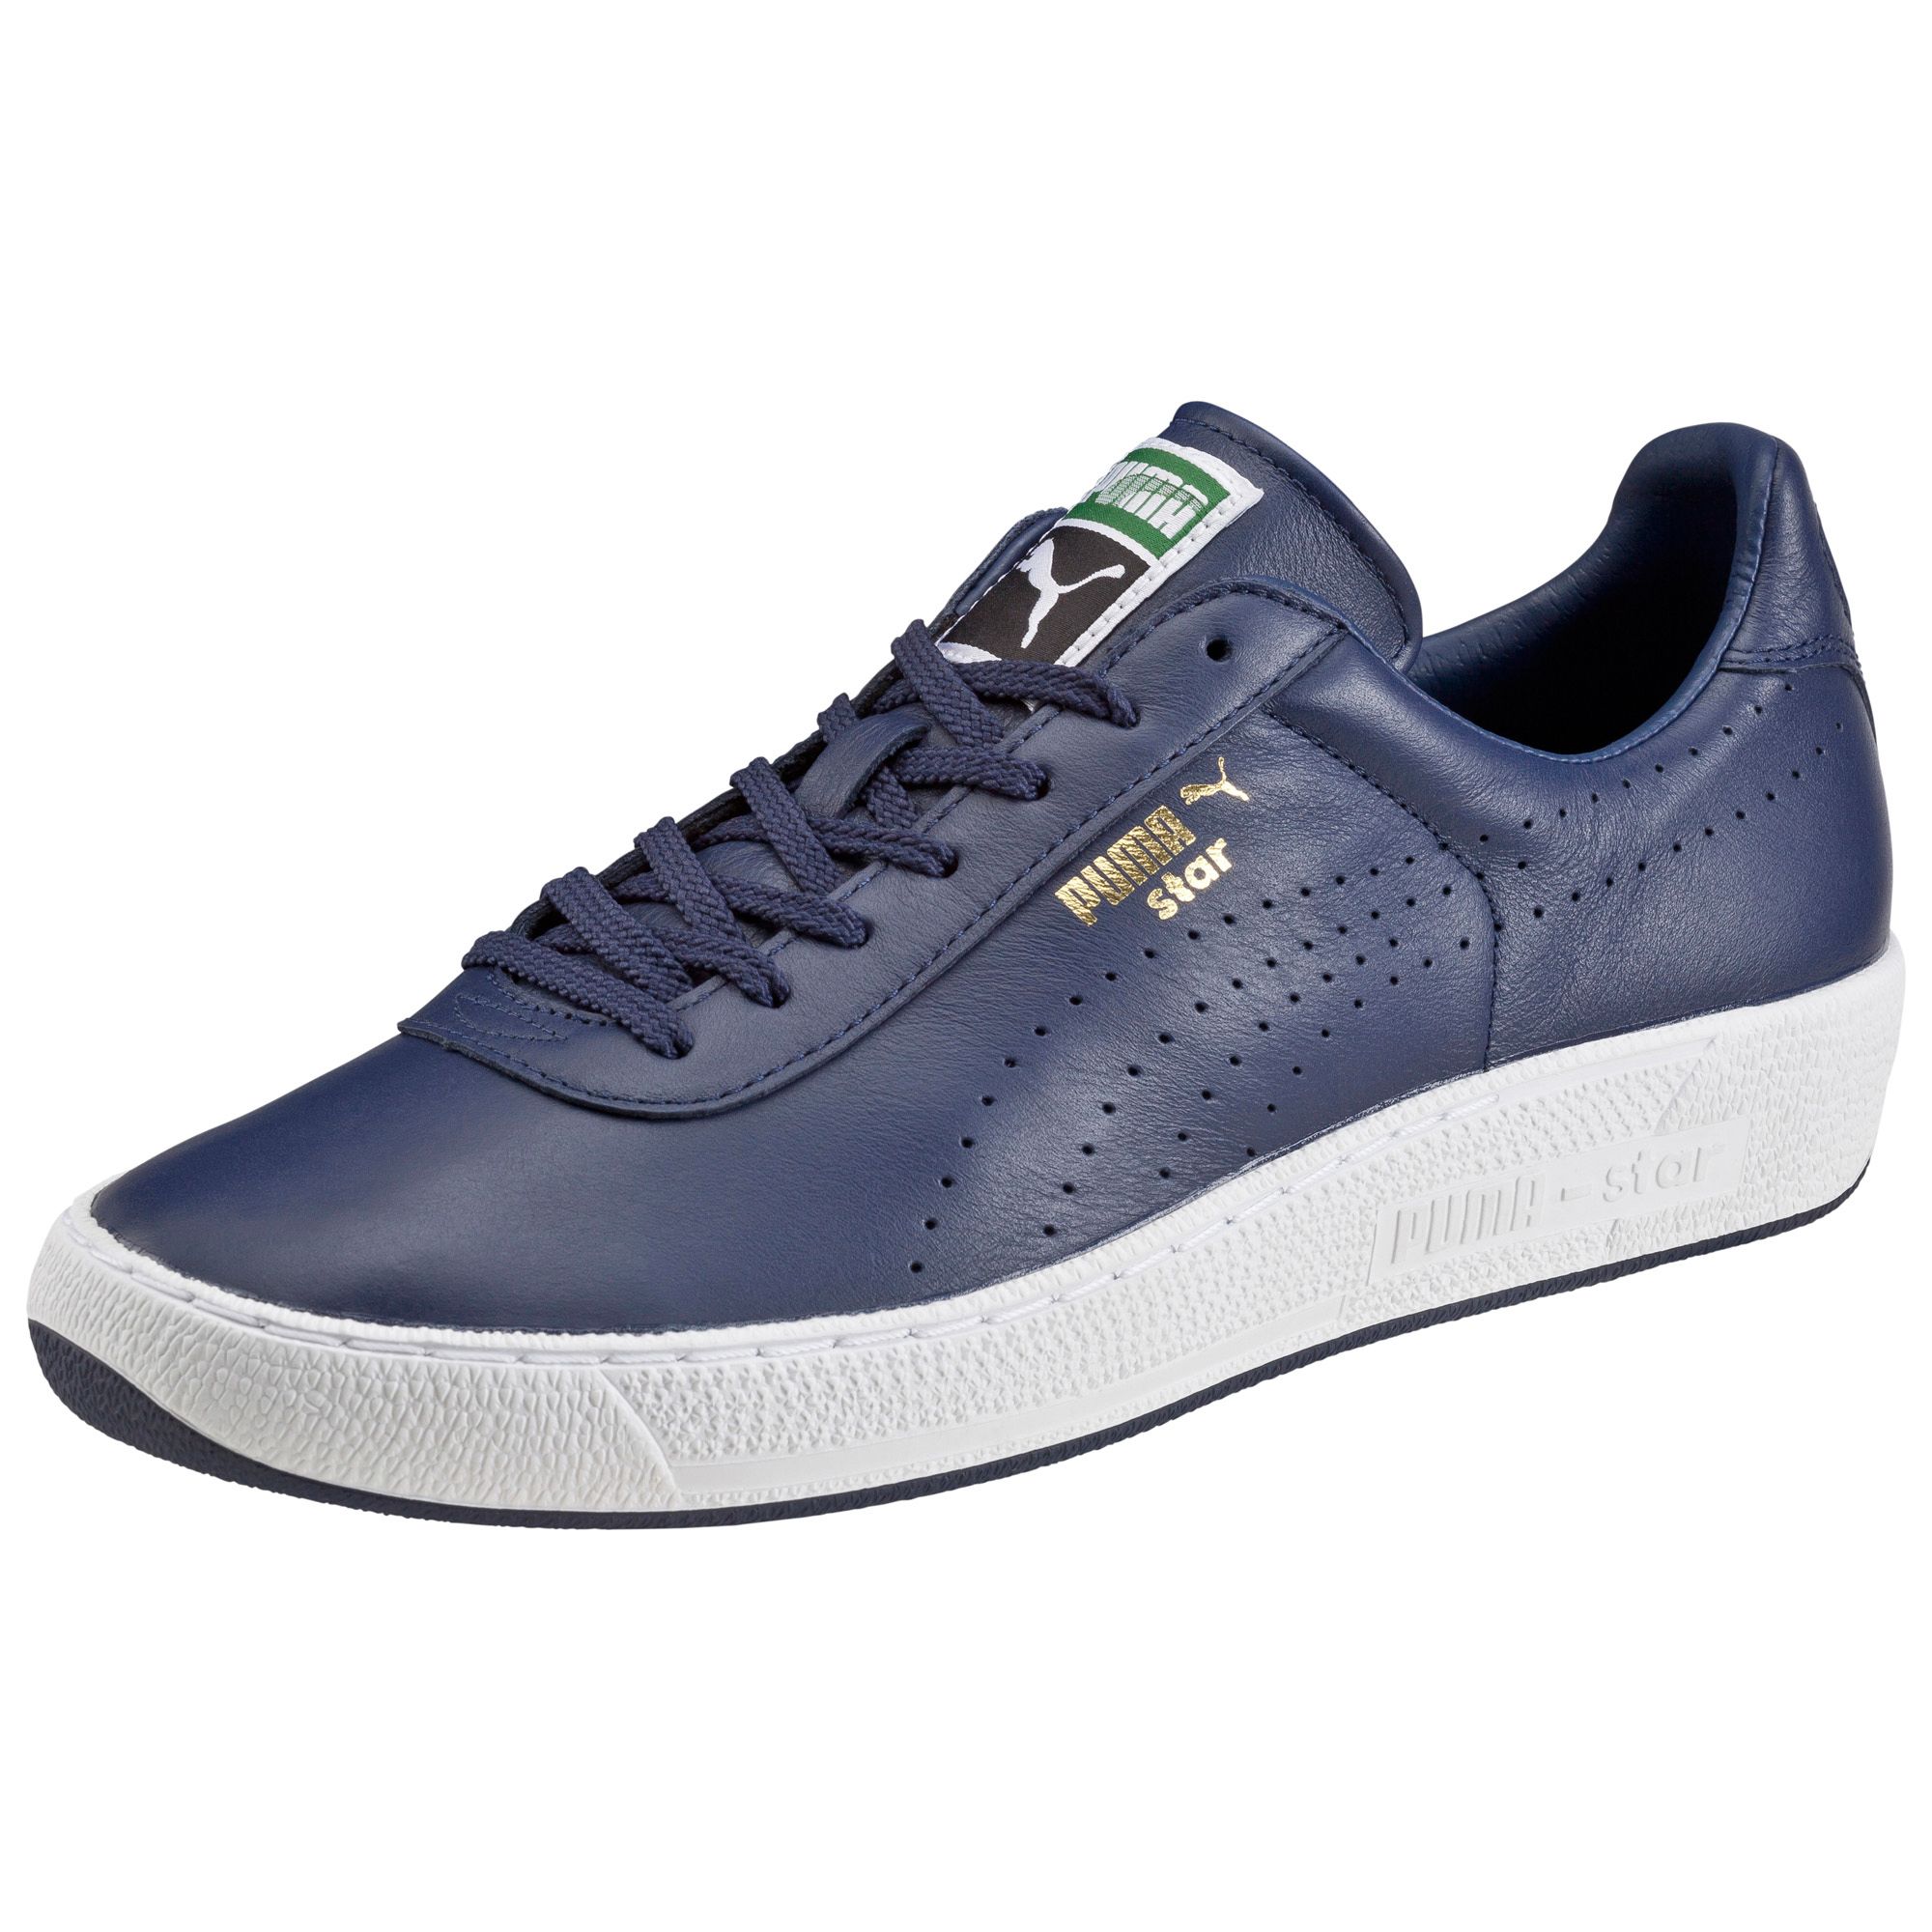 PUMA Star Trainers Footwear New Arrivals Sport Classics Unisex New | eBay